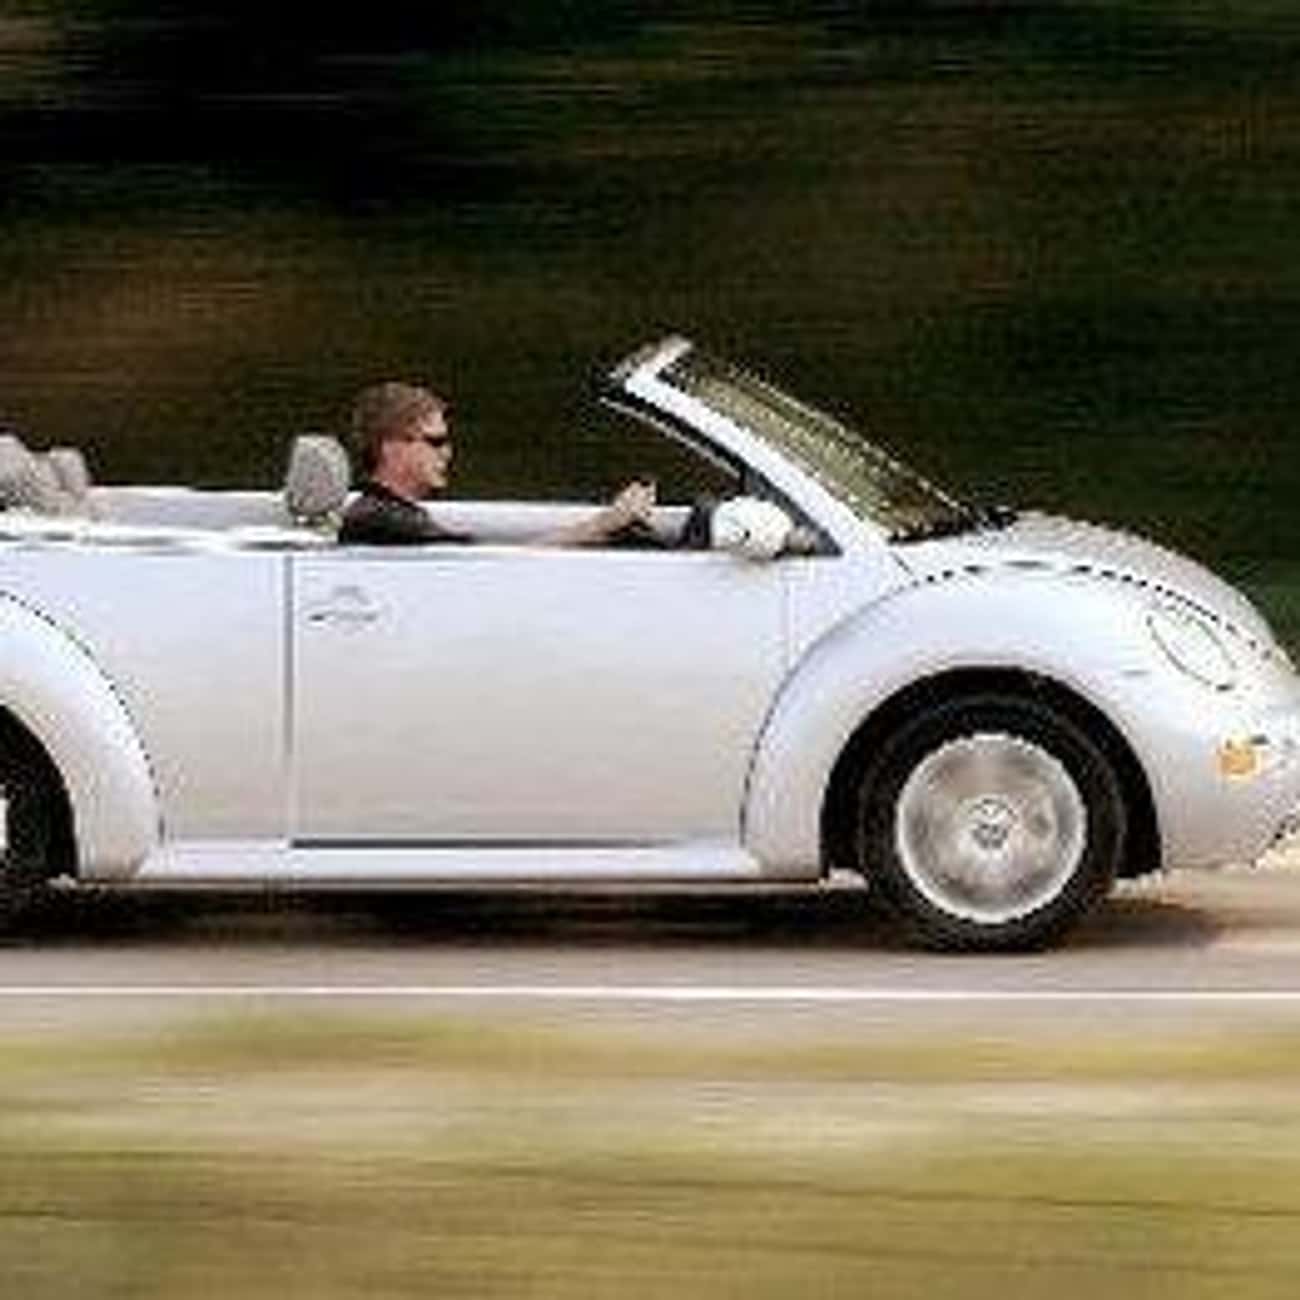 2004 Volkswagen New Beetle Convertible